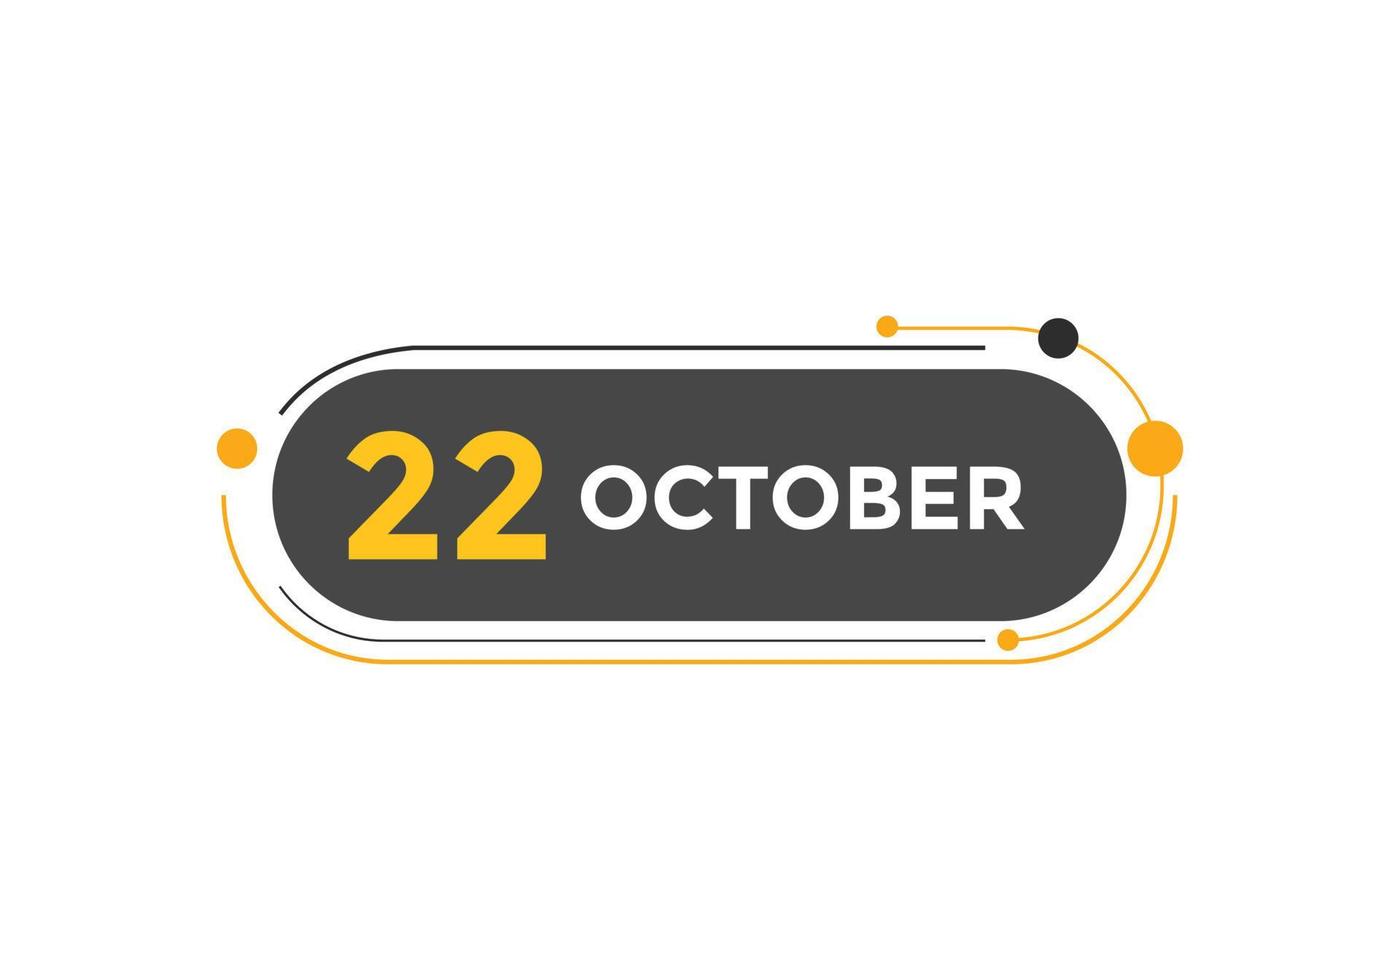 lembrete de calendário de 22 de outubro. 22 de outubro modelo de ícone de calendário diário. modelo de design de ícone de calendário 22 de outubro. ilustração vetorial vetor